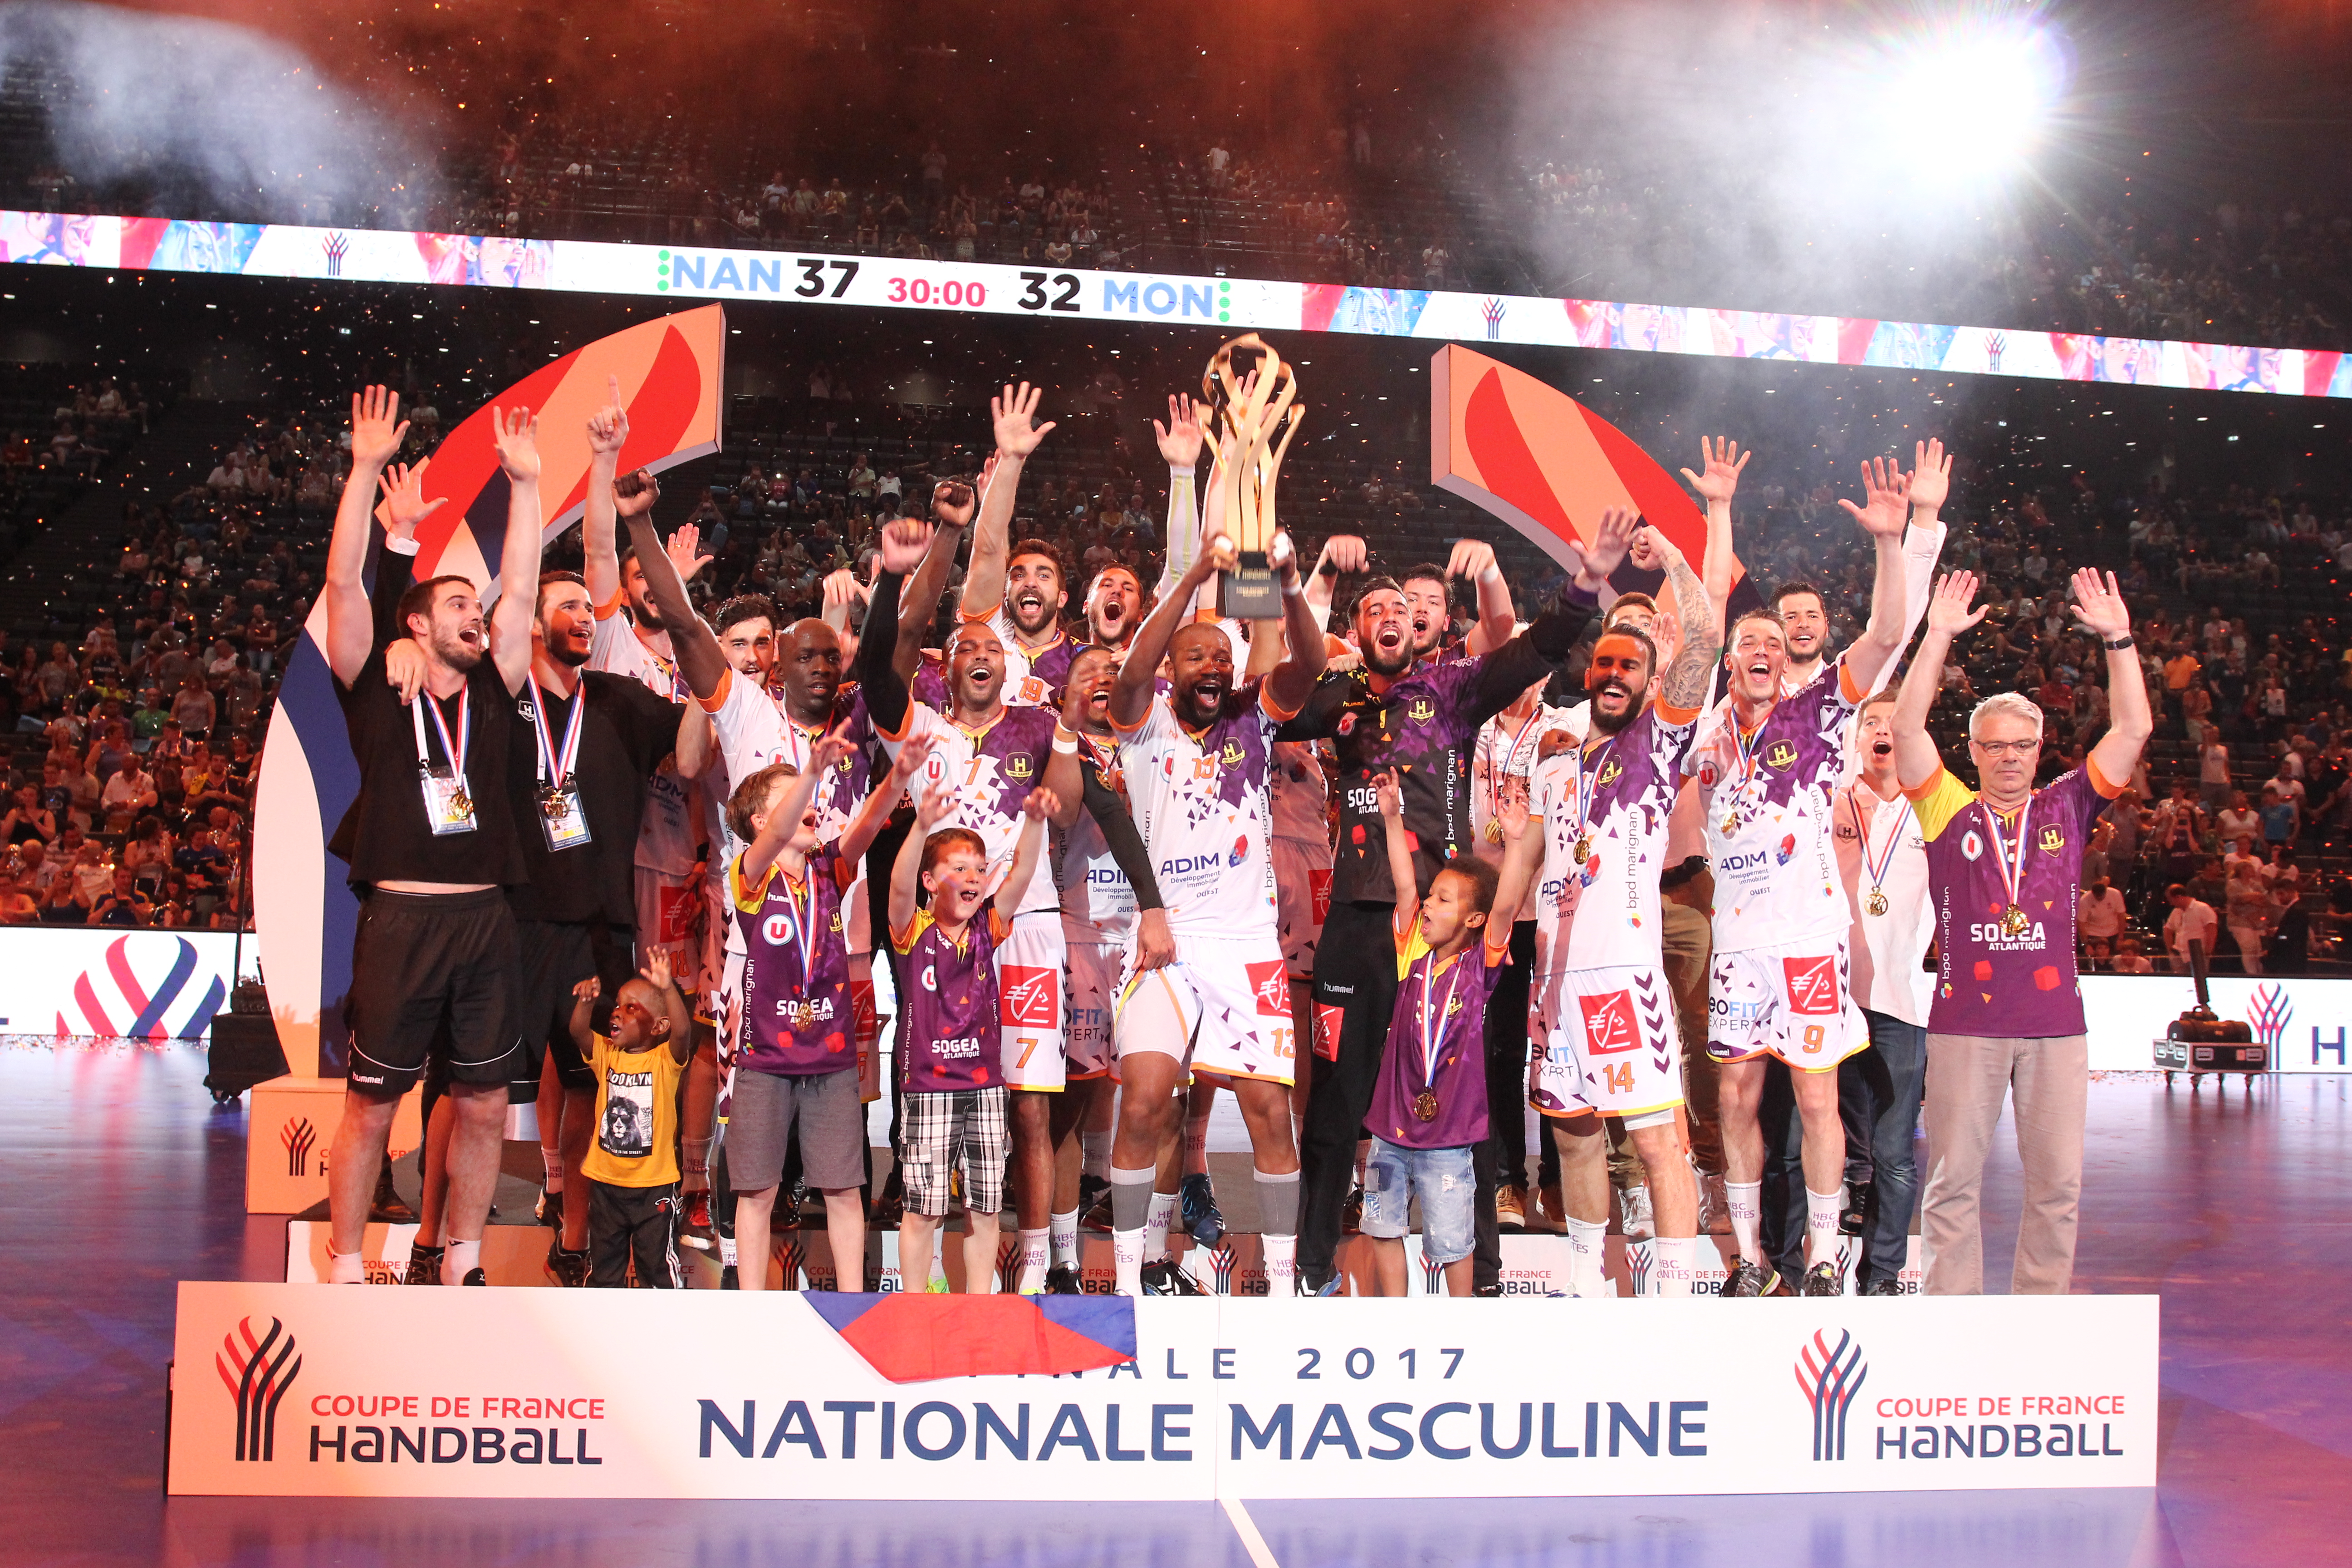 Le HBC Nantes vainqueur de la Coupe de France !!!